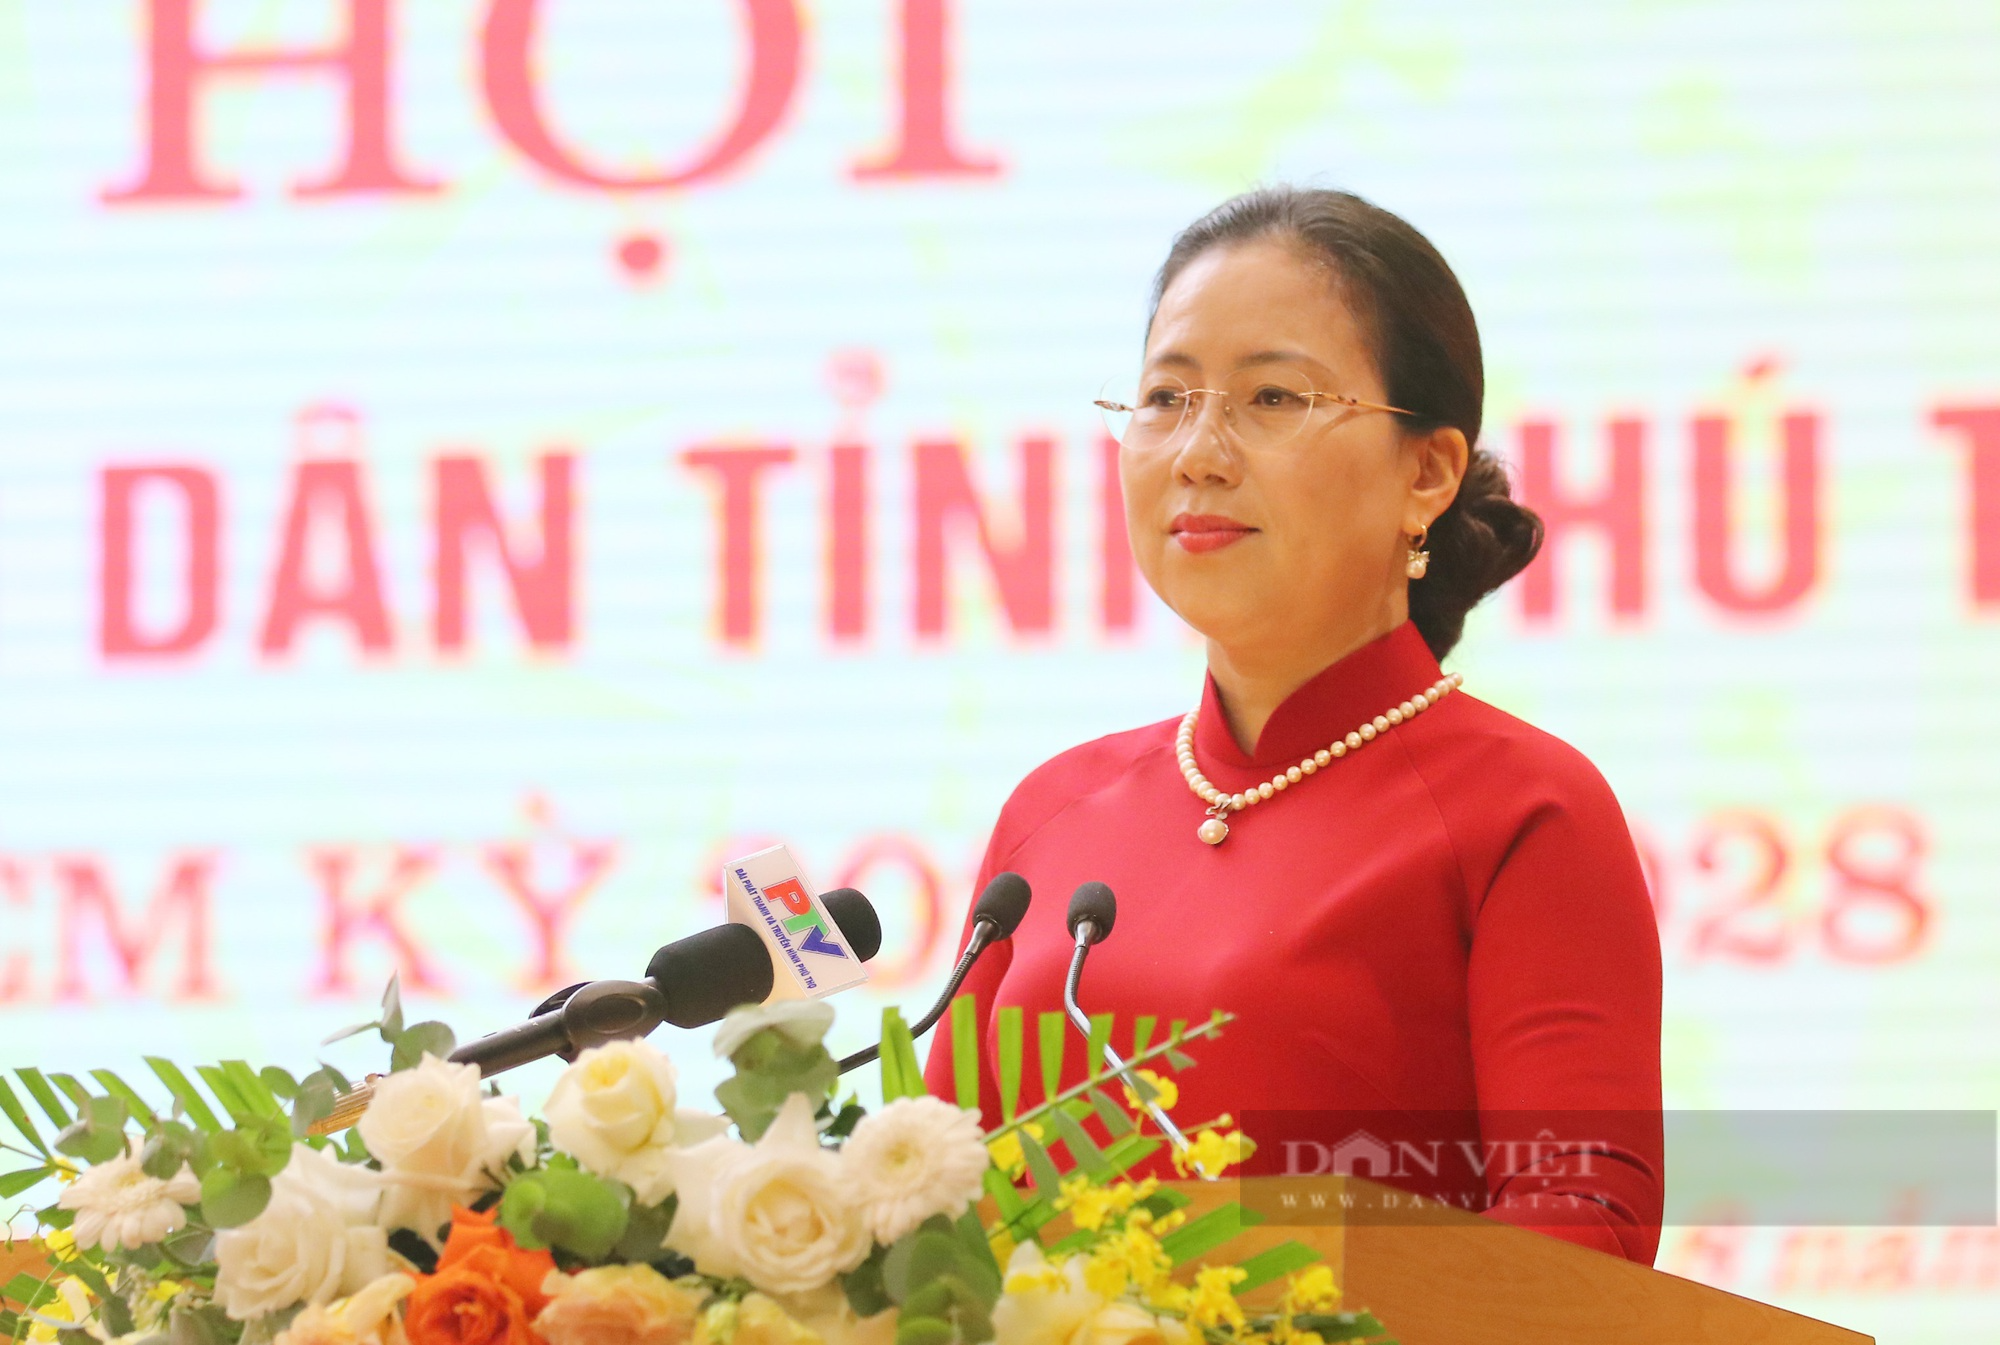 Phó Chủ tịch Hội NDVN Bùi Thị Thơm: Phú Thọ đi đầu kết nạp nhà khoa học, sinh viên làm hội viên Hội Nông dân- Ảnh 1.